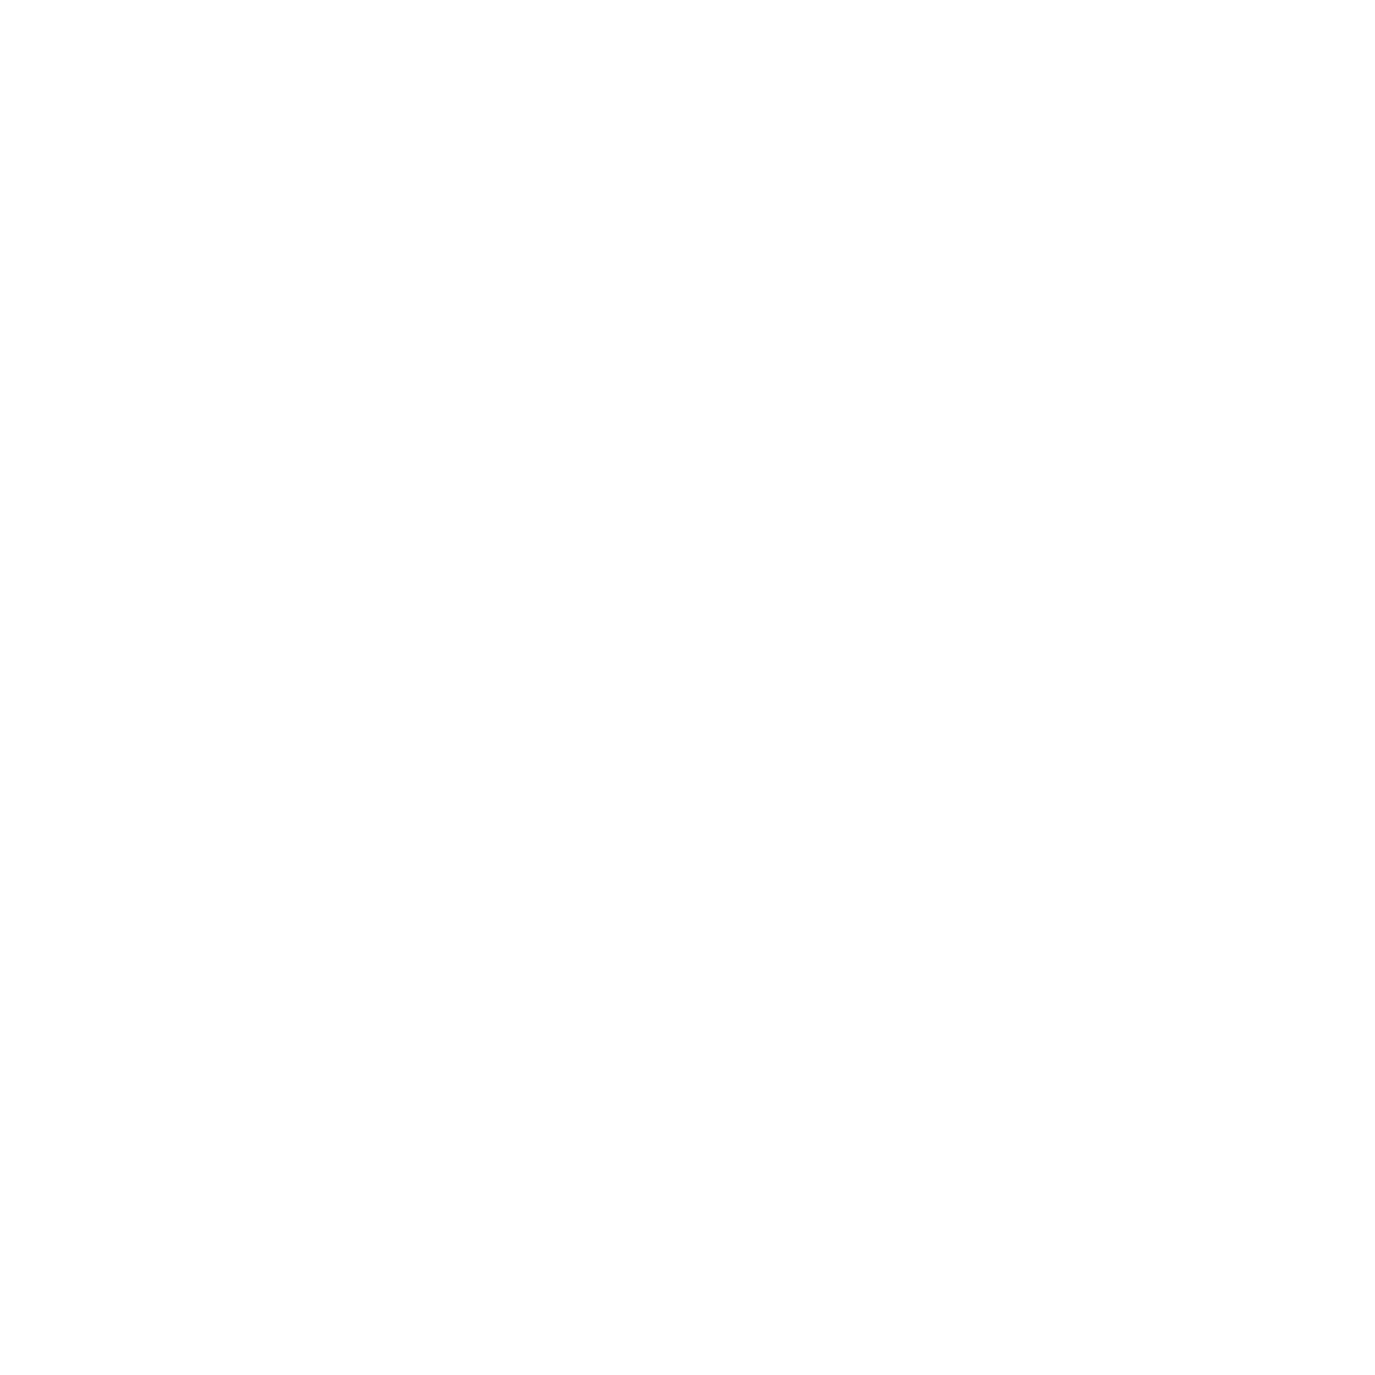 Crow Song Farms